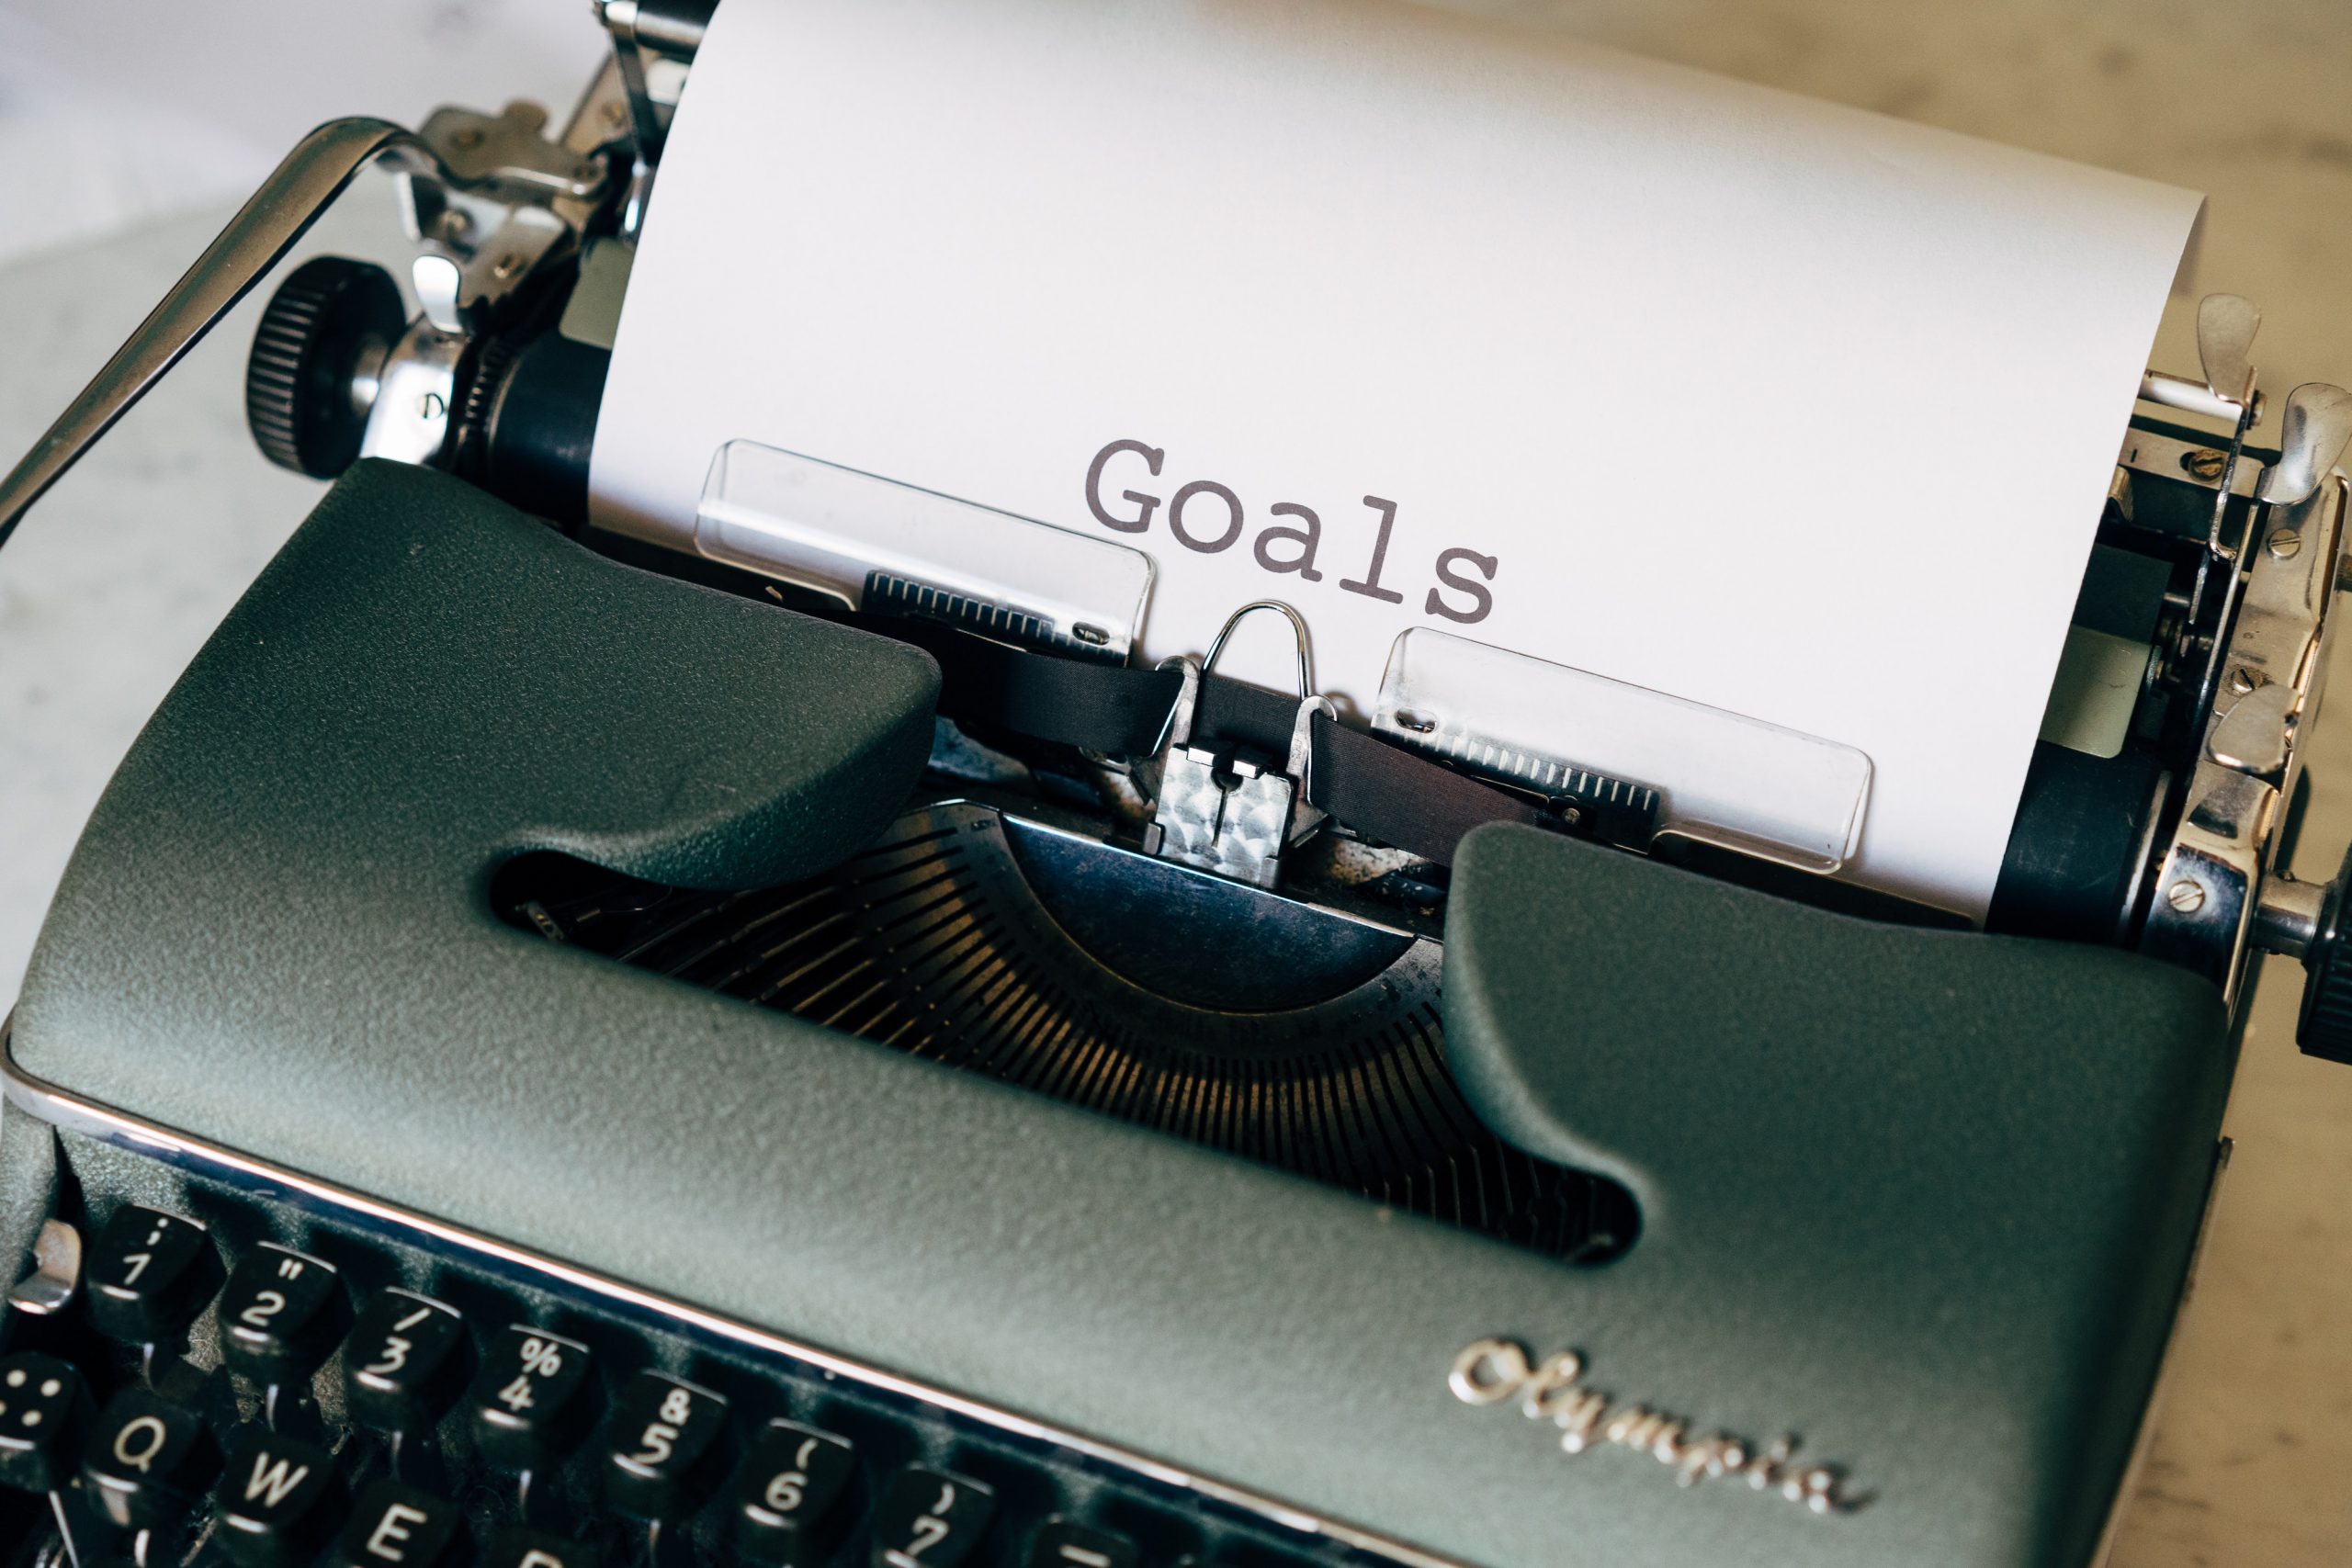 What goals should you set?